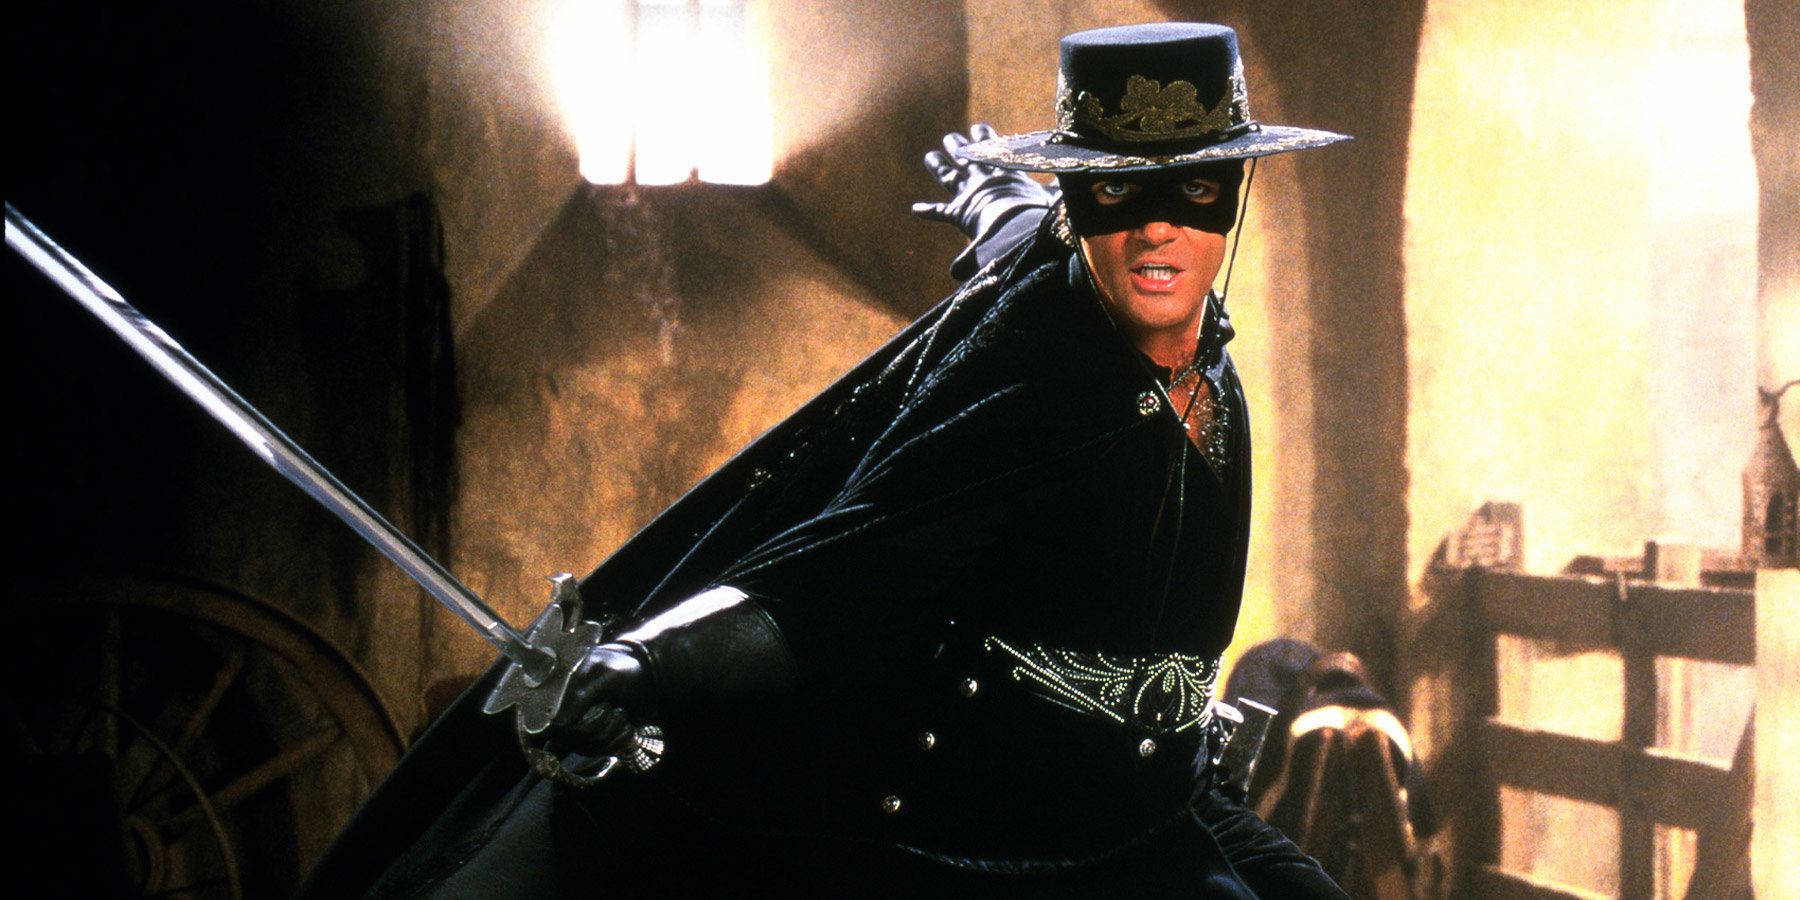 Antonio Banderas na Máscara do Zorro